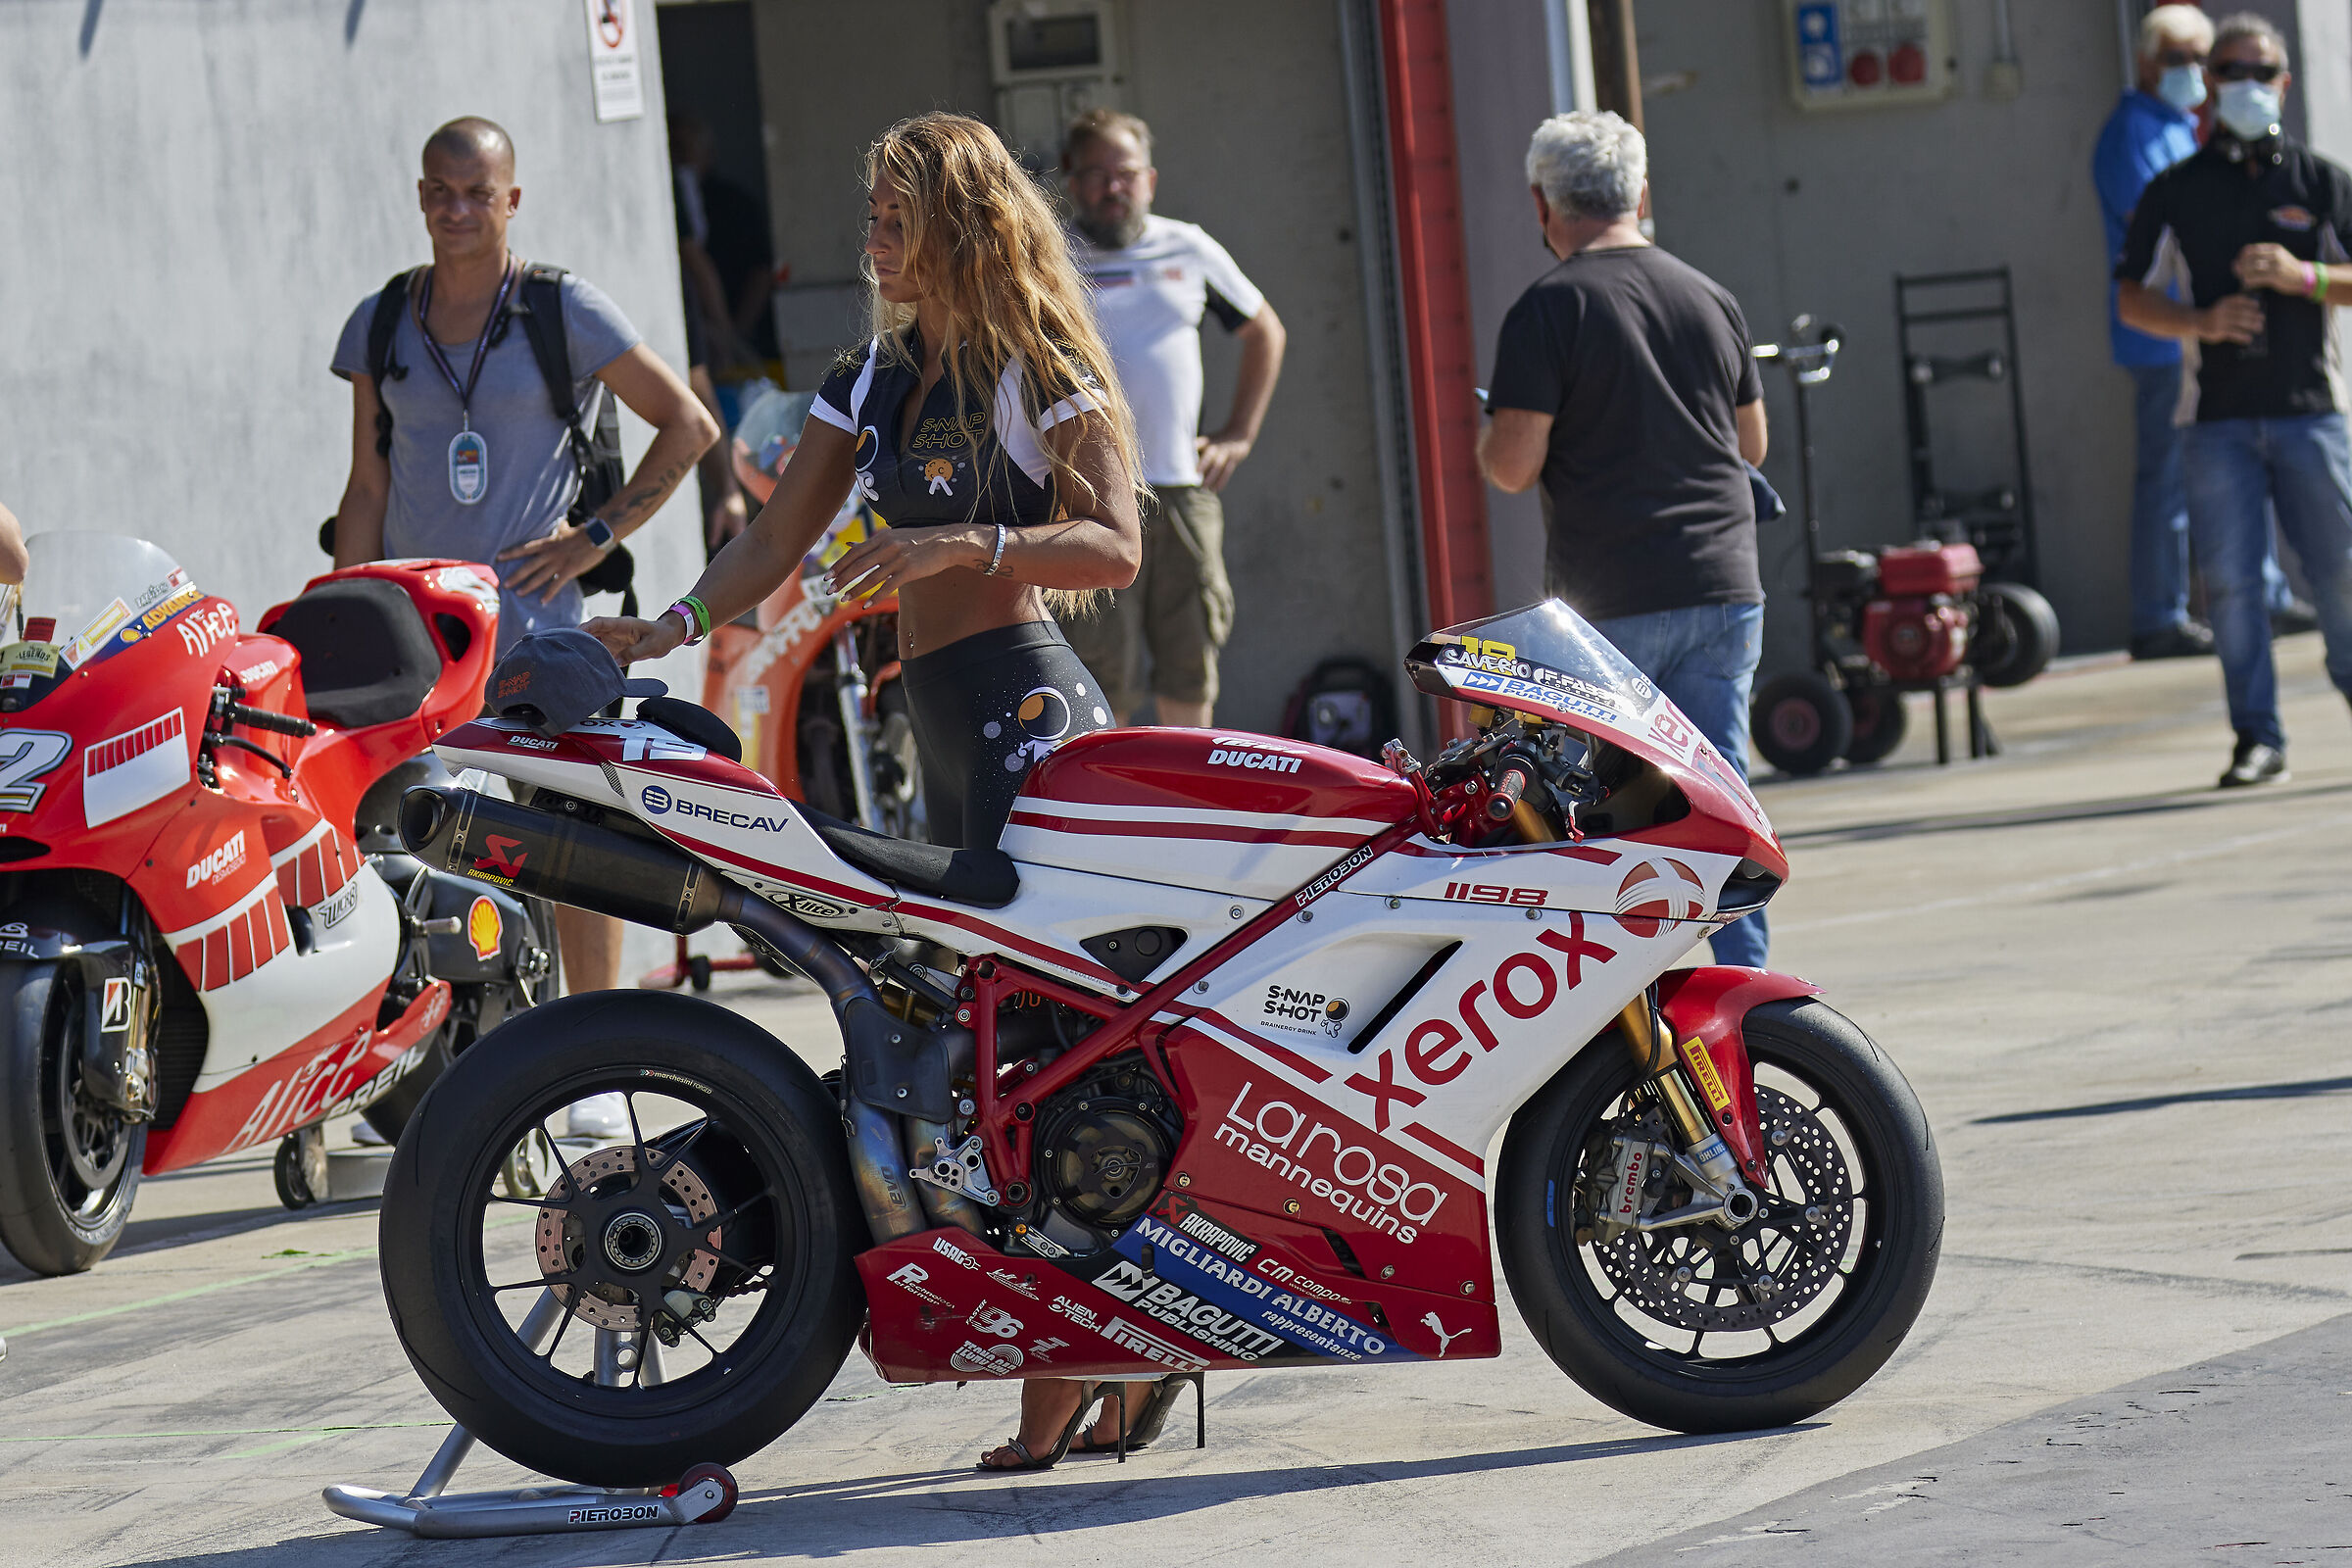 Great beautiful Ducati...